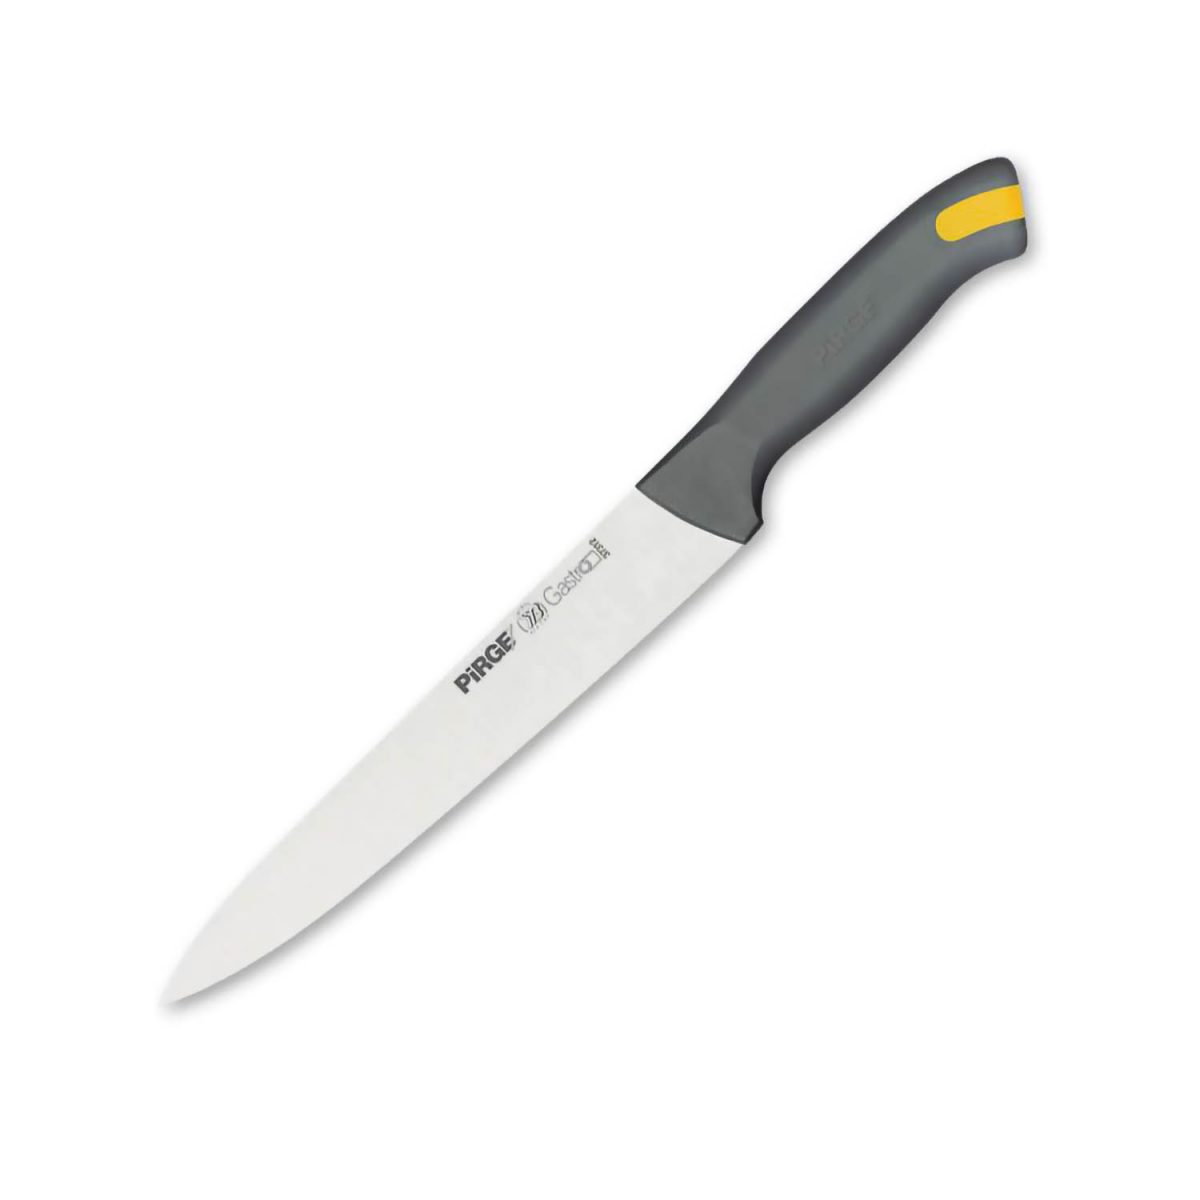 Pirge Gastro Dilimleme Bıçağı 18 cm – 37312 Bıçaklar ve Dilimleyiciler Fransız Çeliği